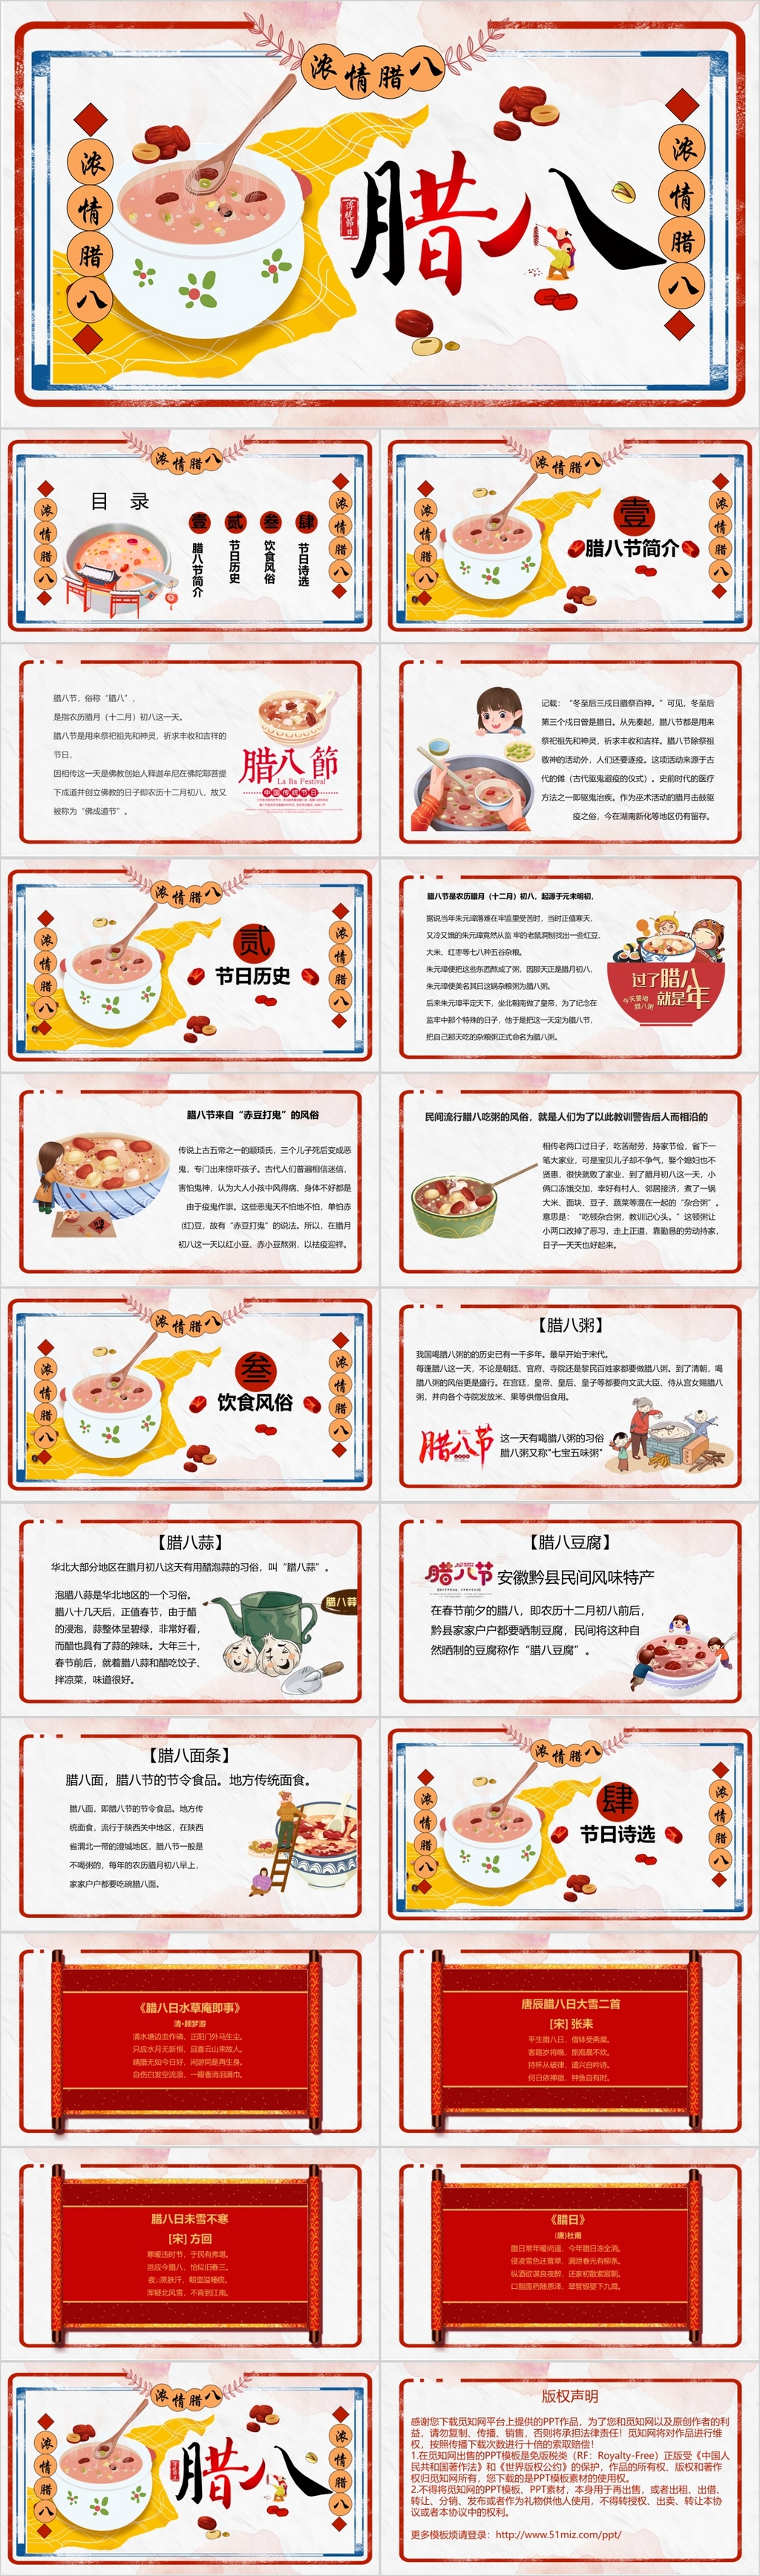 卡通中国风传统文化传统节日腊八节PPT模板